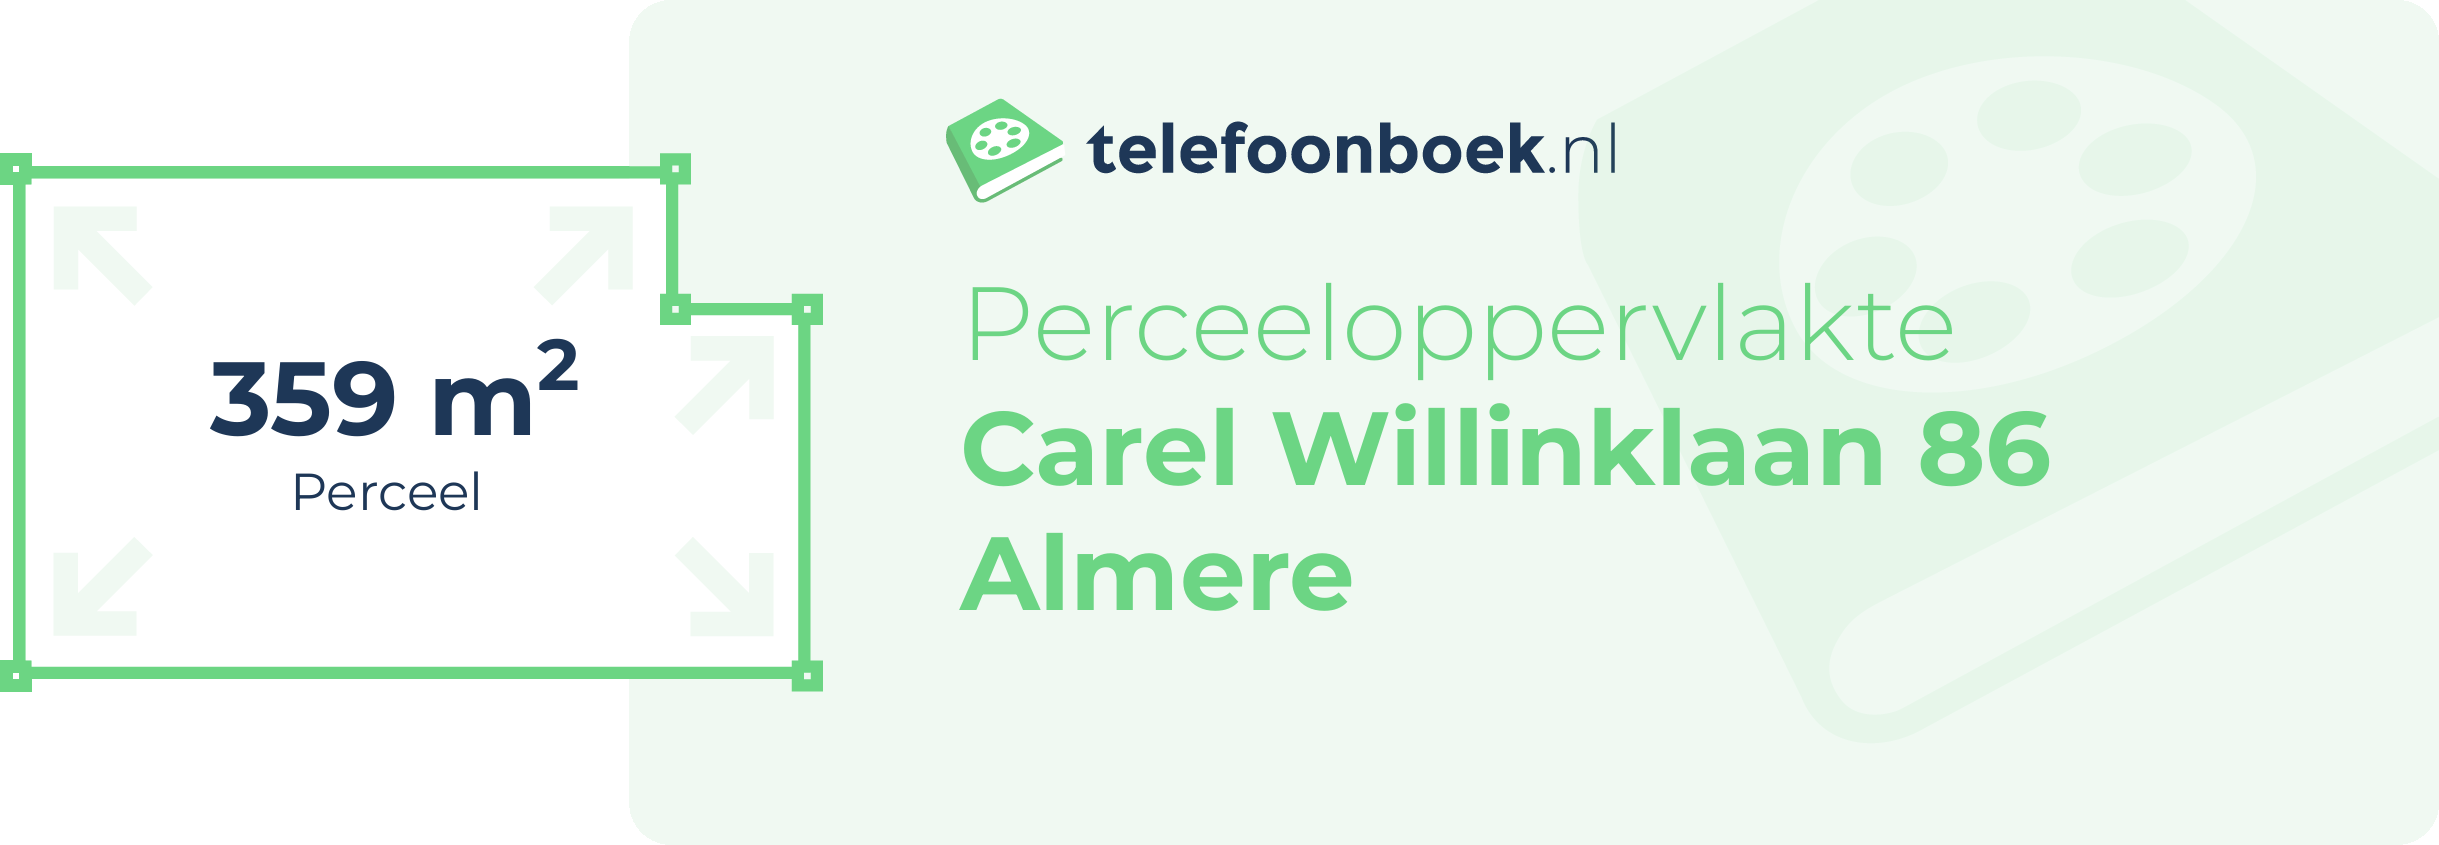 Perceeloppervlakte Carel Willinklaan 86 Almere